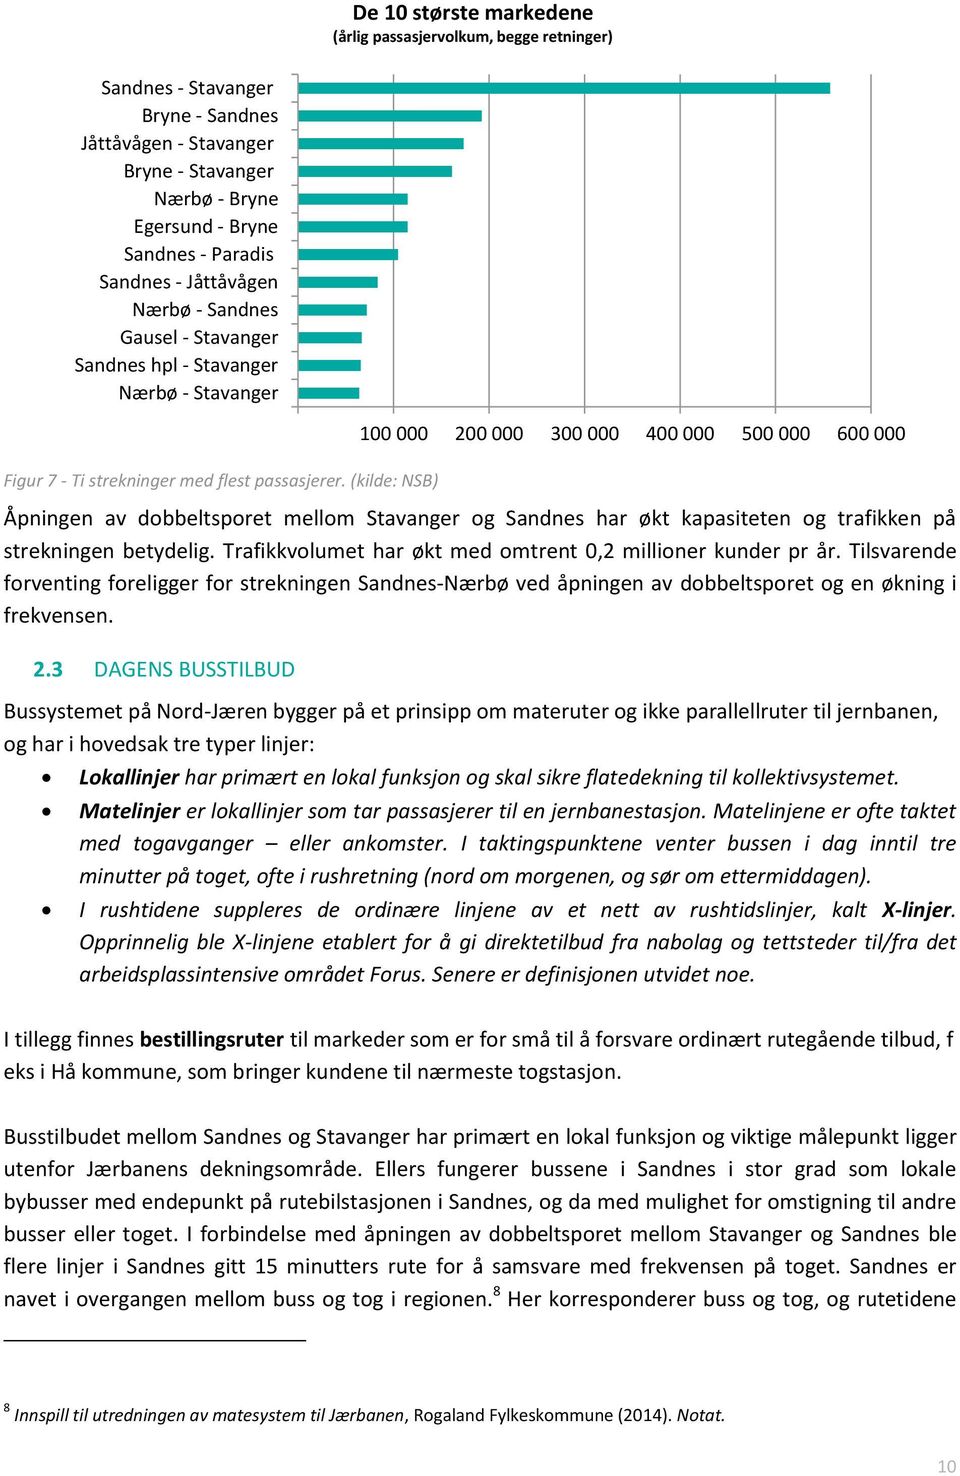 (kilde: NSB) 100 000 200 000 300 000 400 000 500 000 600 000 Åpningen av dobbeltsporet mellom Stavanger og Sandnes har økt kapasiteten og trafikken på strekningen betydelig.